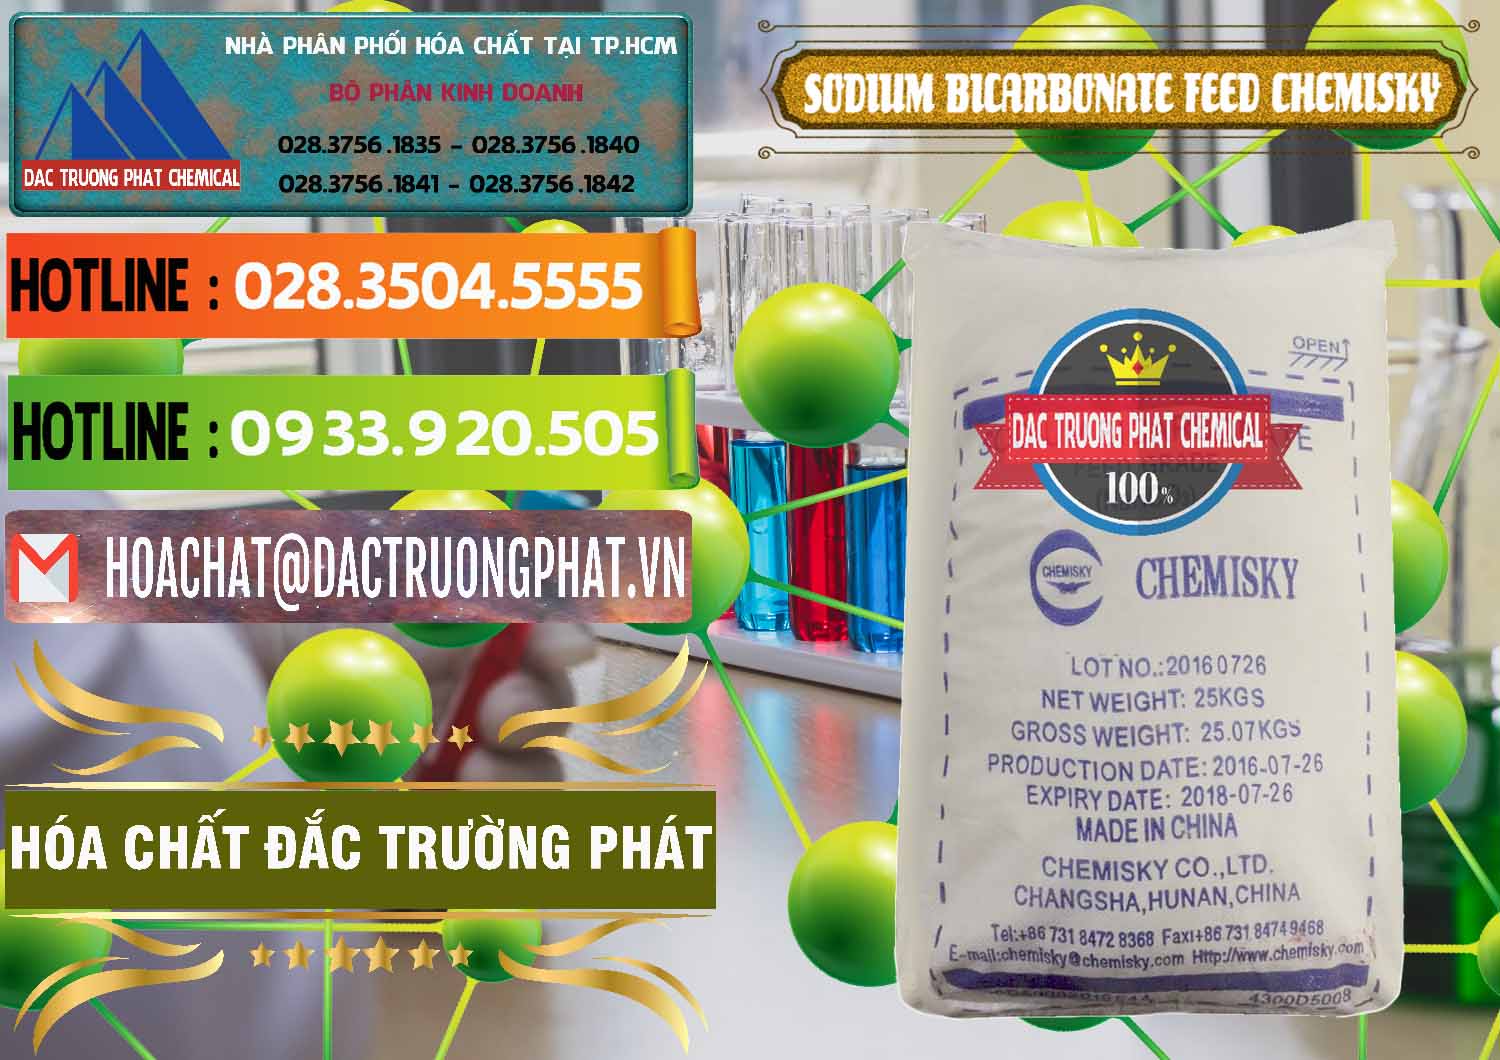 Nơi chuyên cung cấp - bán Sodium Bicarbonate – Bicar NaHCO3 Feed Grade Chemisky Trung Quốc China - 0264 - Nơi chuyên phân phối - kinh doanh hóa chất tại TP.HCM - cungcaphoachat.com.vn